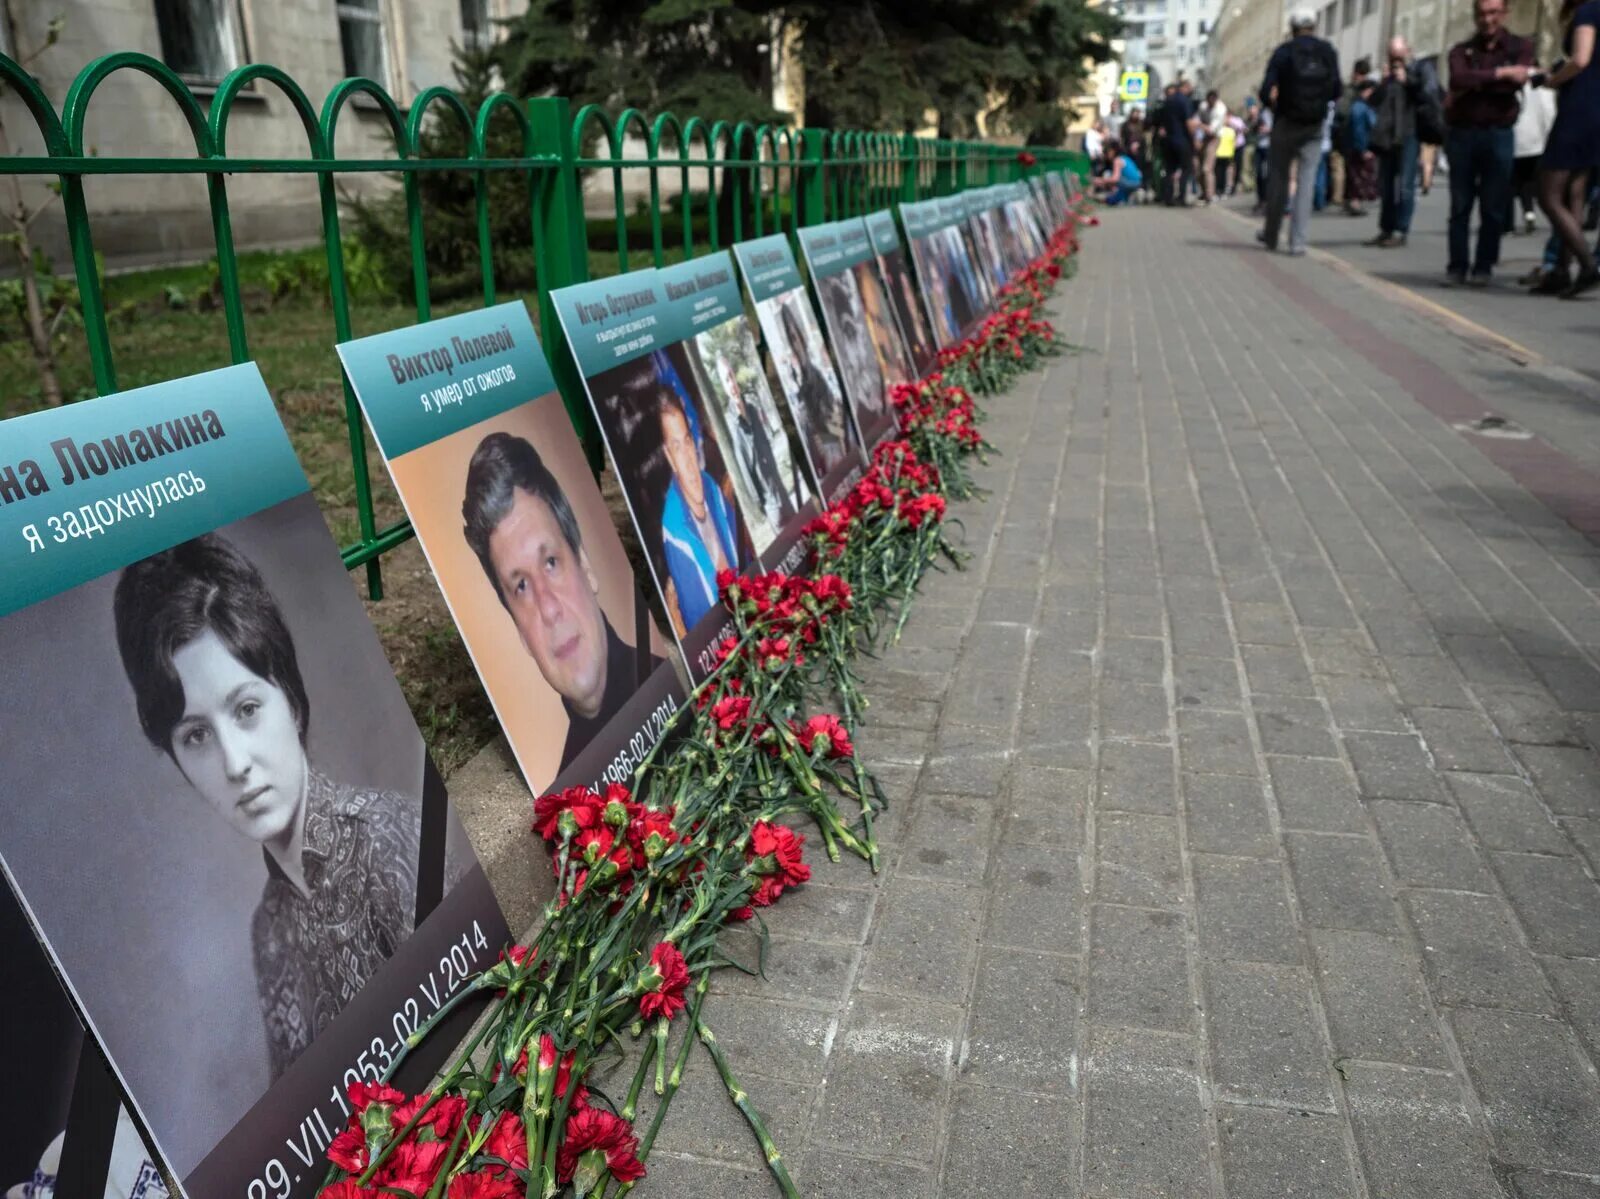 Сколько погибших в одессе. Одесса дом профсоюзов 2 мая 2014 погибшие. Одесский дом профсоюзов погибшие. Погибшие в доме профсоюзов в Одессе. Массовое убийство в Одессе.